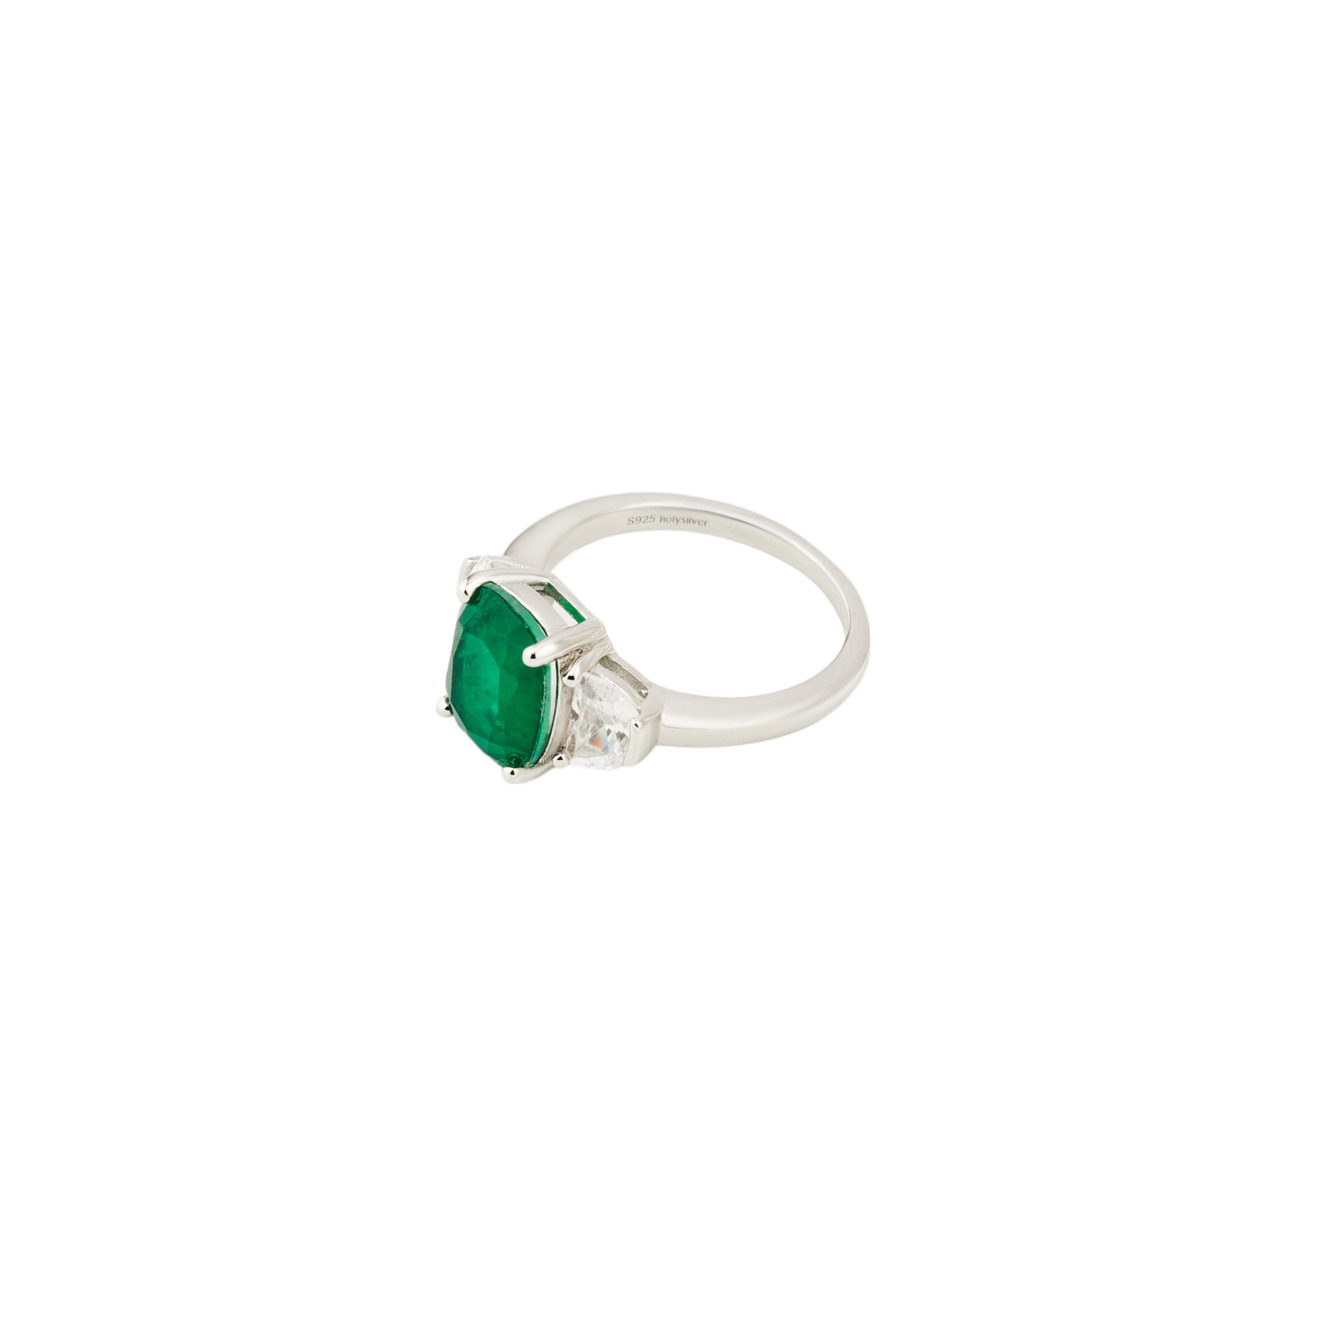 Holy Silver Кольцо из серебра с крупным зеленым кристаллом de formee голубое кольцо с зеленым кристаллом